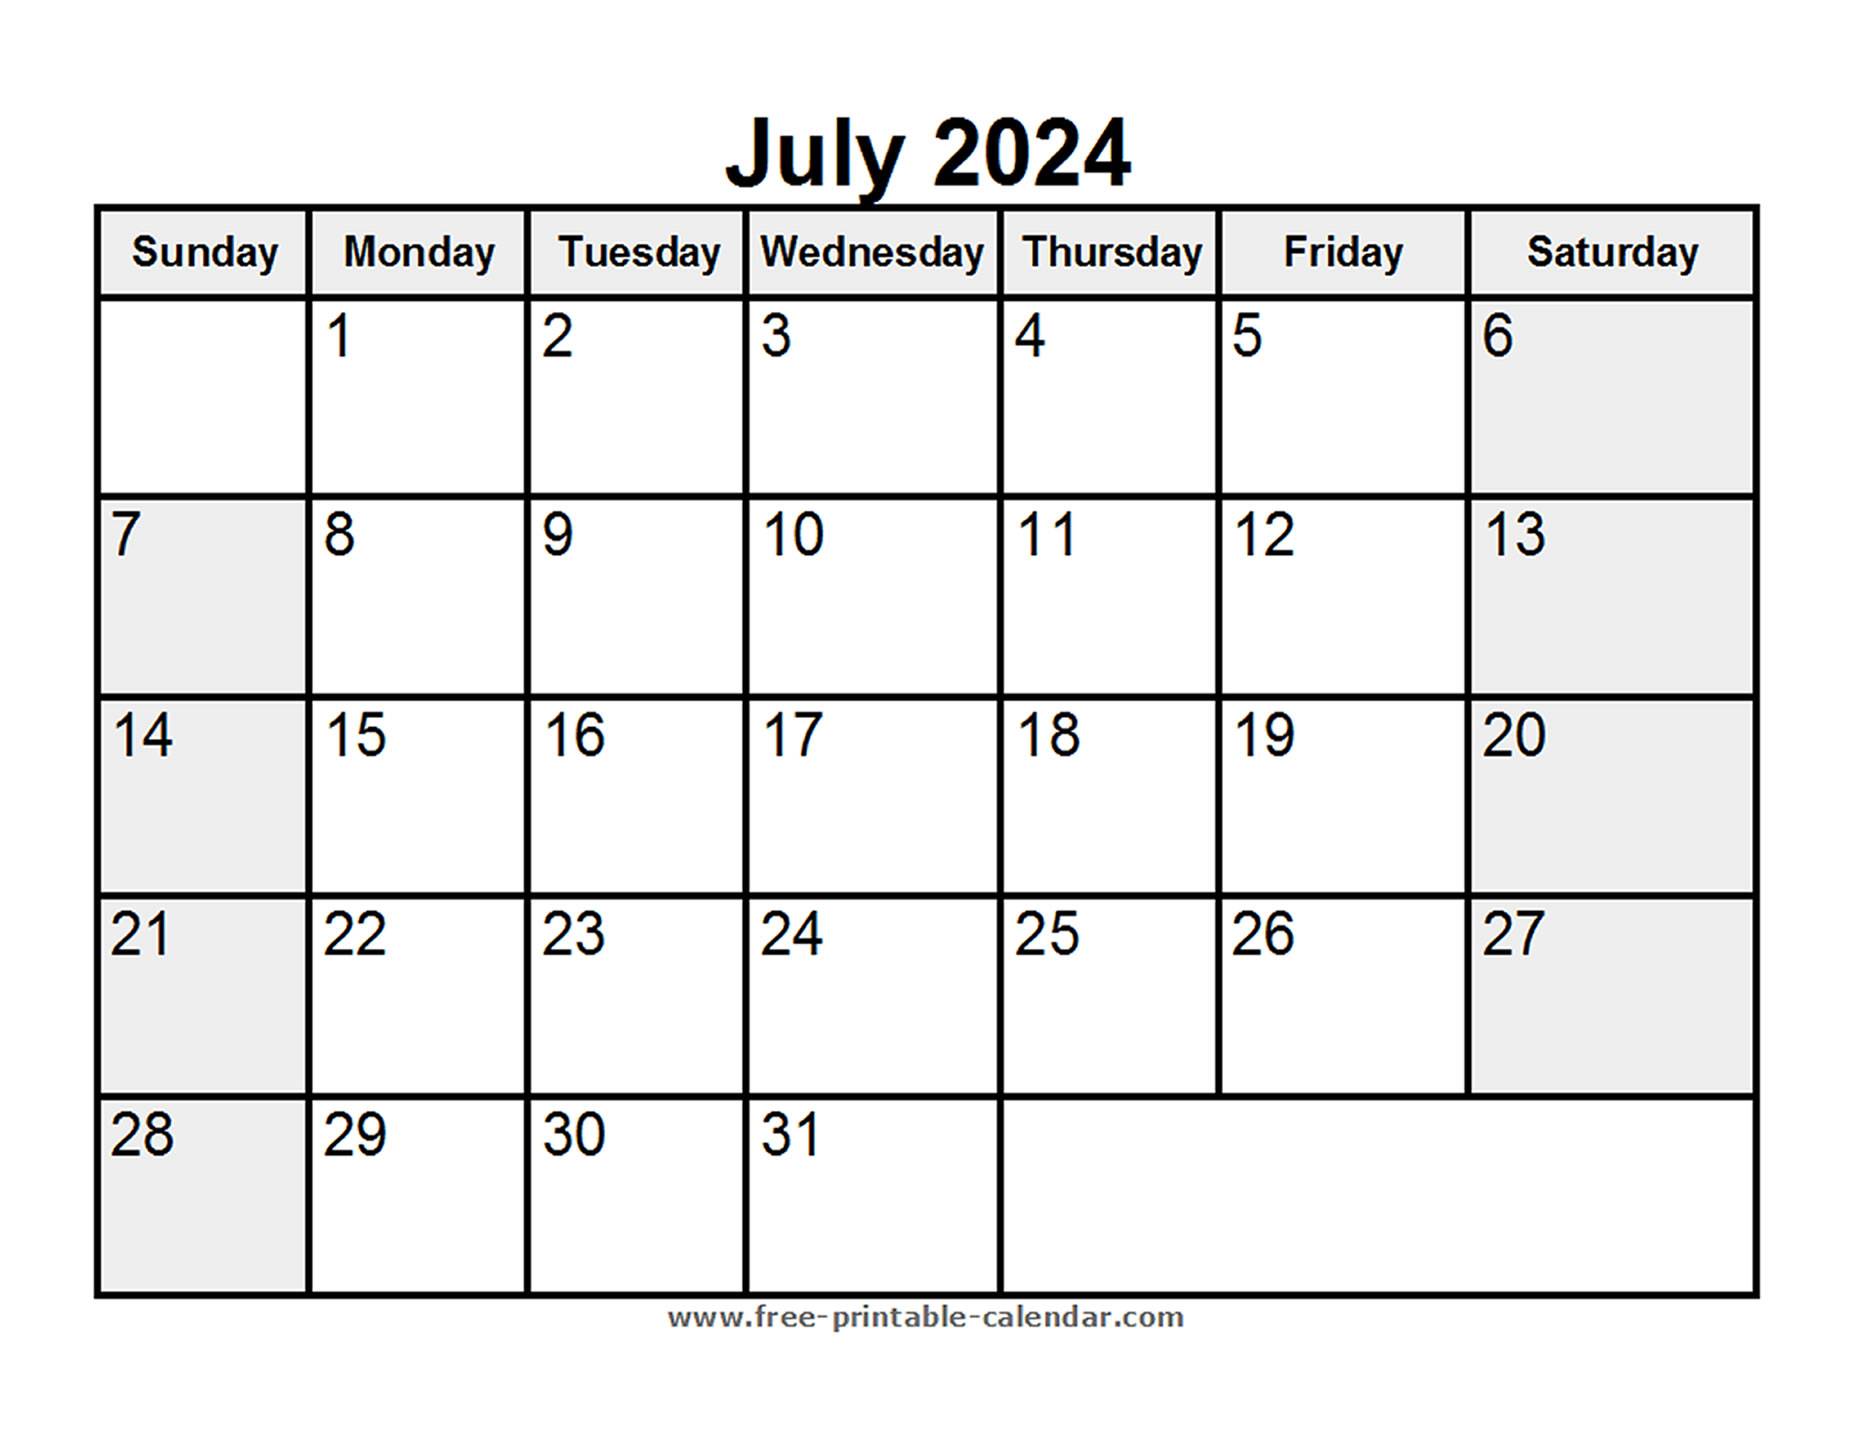 Printable July 2024 Calendar - Free-printable-calendar.com